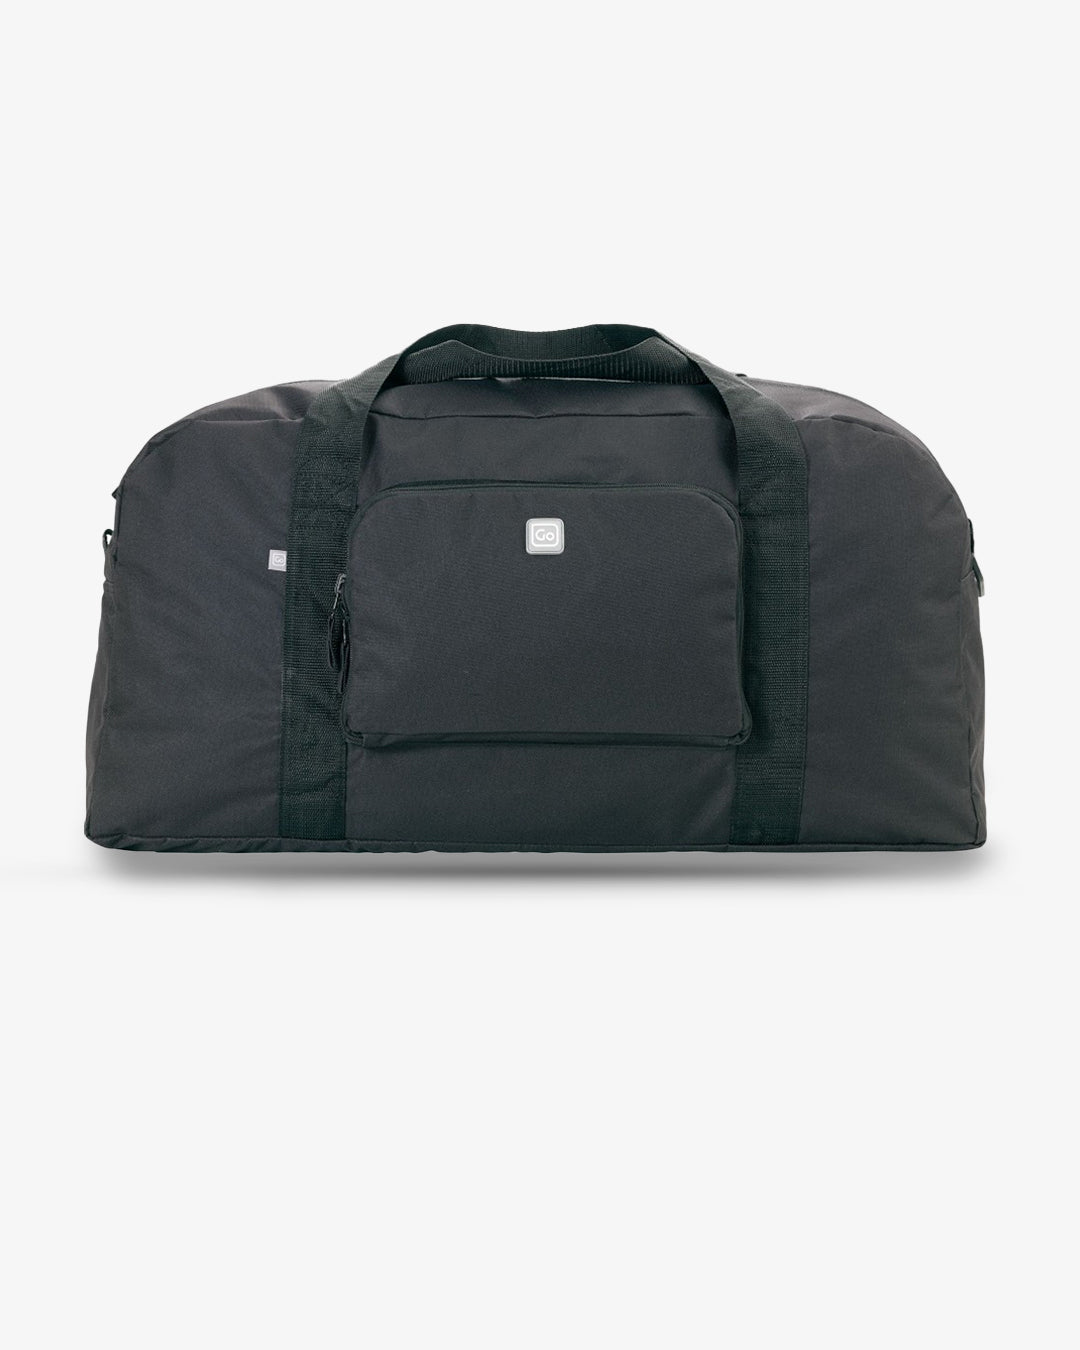 Go Travel Extra Big Bag (Folded)